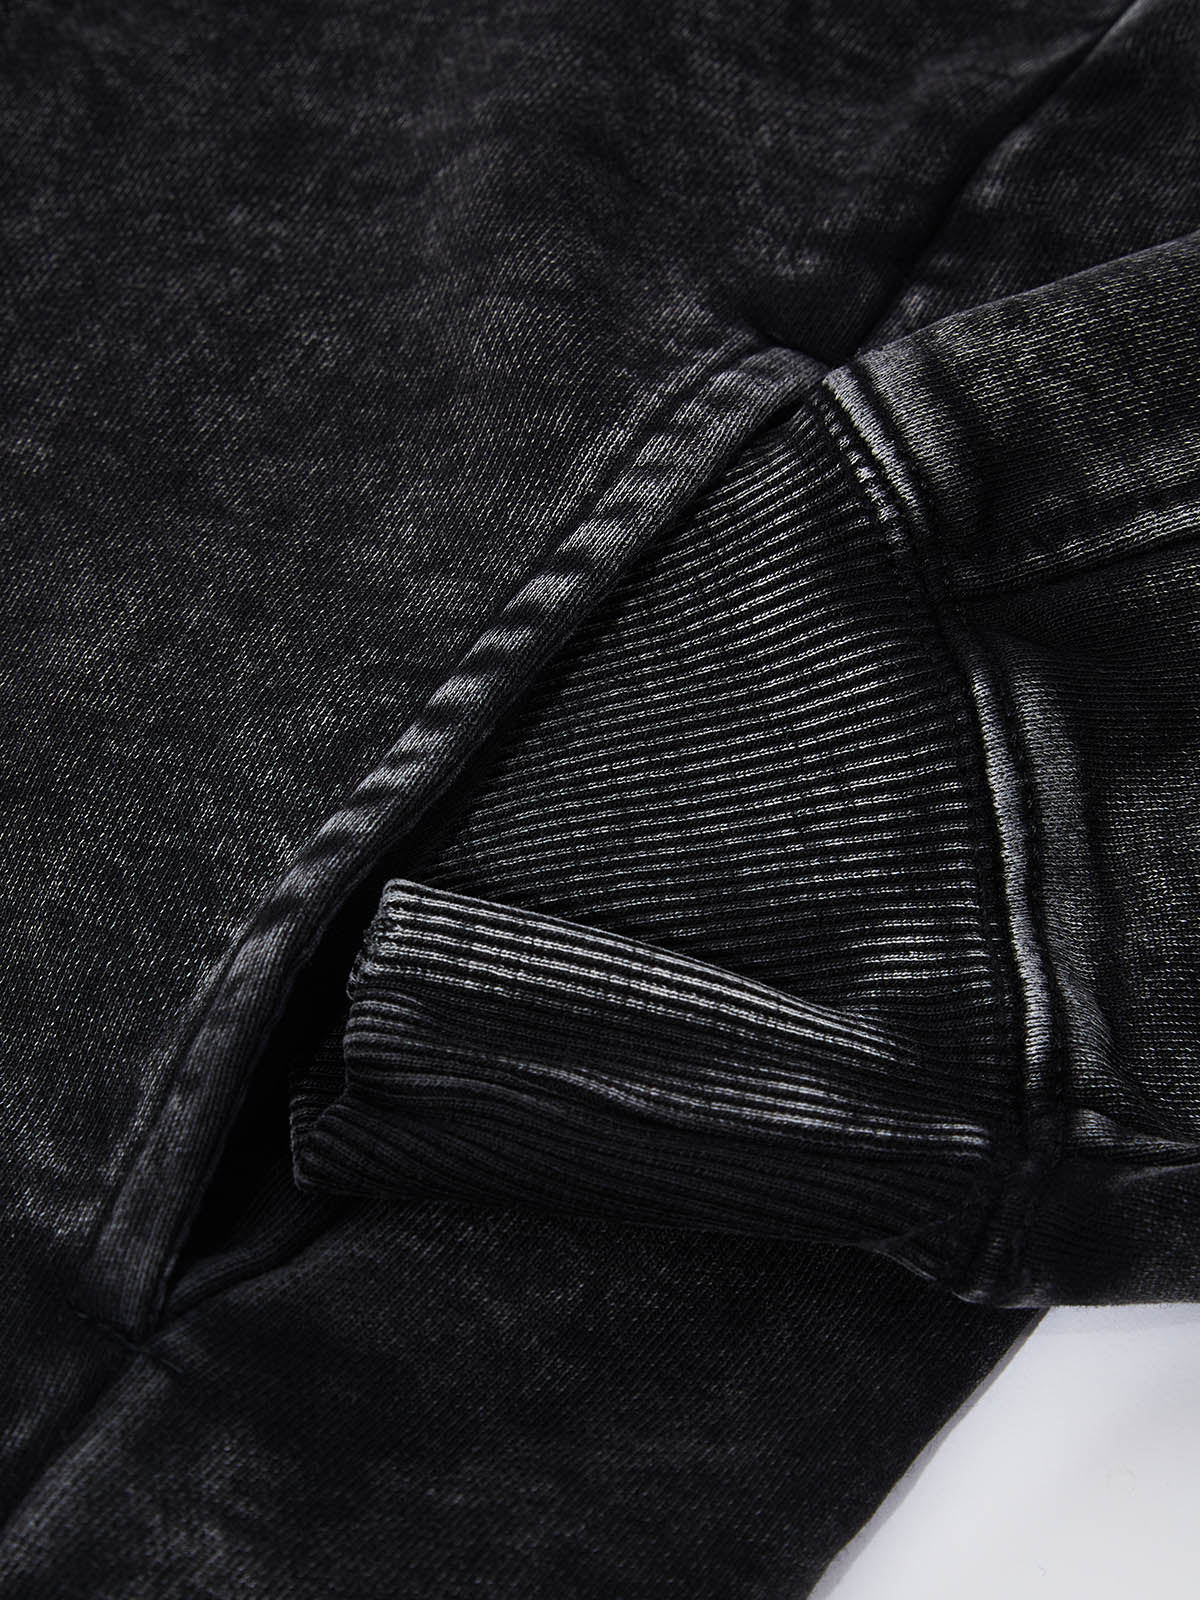 UNKNOWN ALLURE© マドンナ アンド チャイルド 輪郭石膏スタイル 350G スウェットシャツ